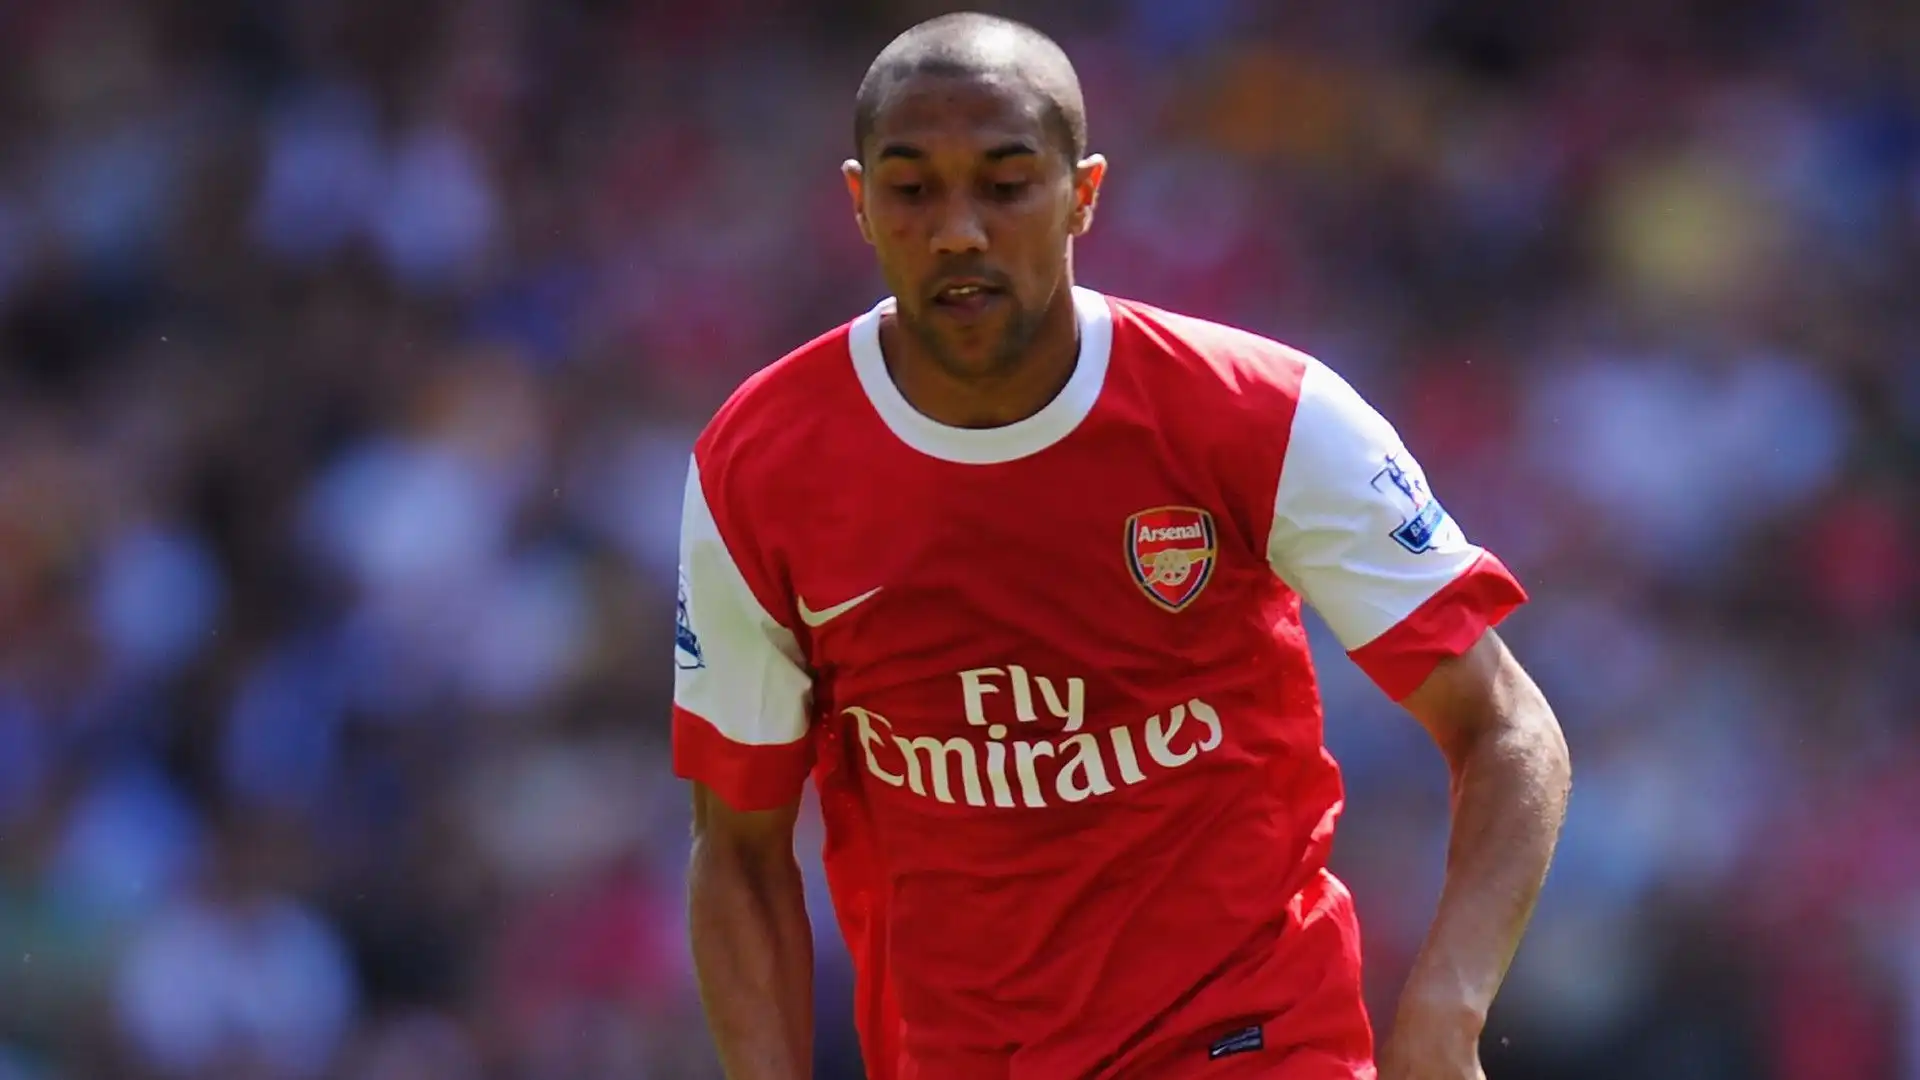 Dal 2003 al 2011 ha giocato con l'Arsenal